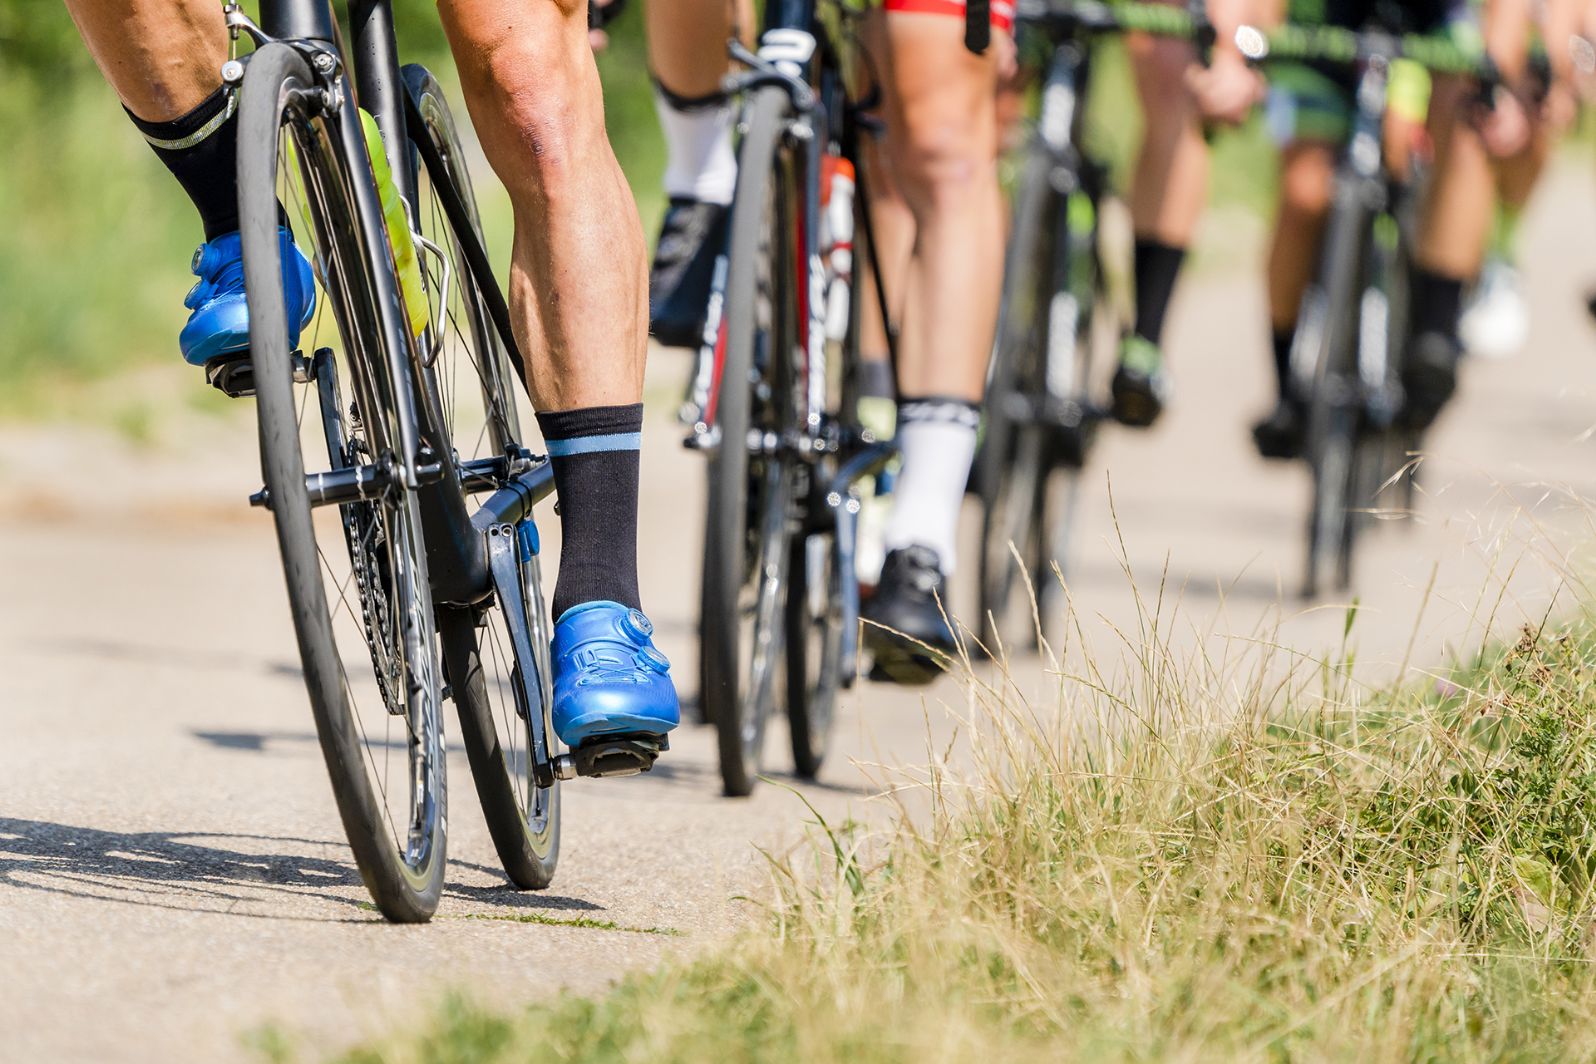 Ciclismo abre hoje calendário de alta competição